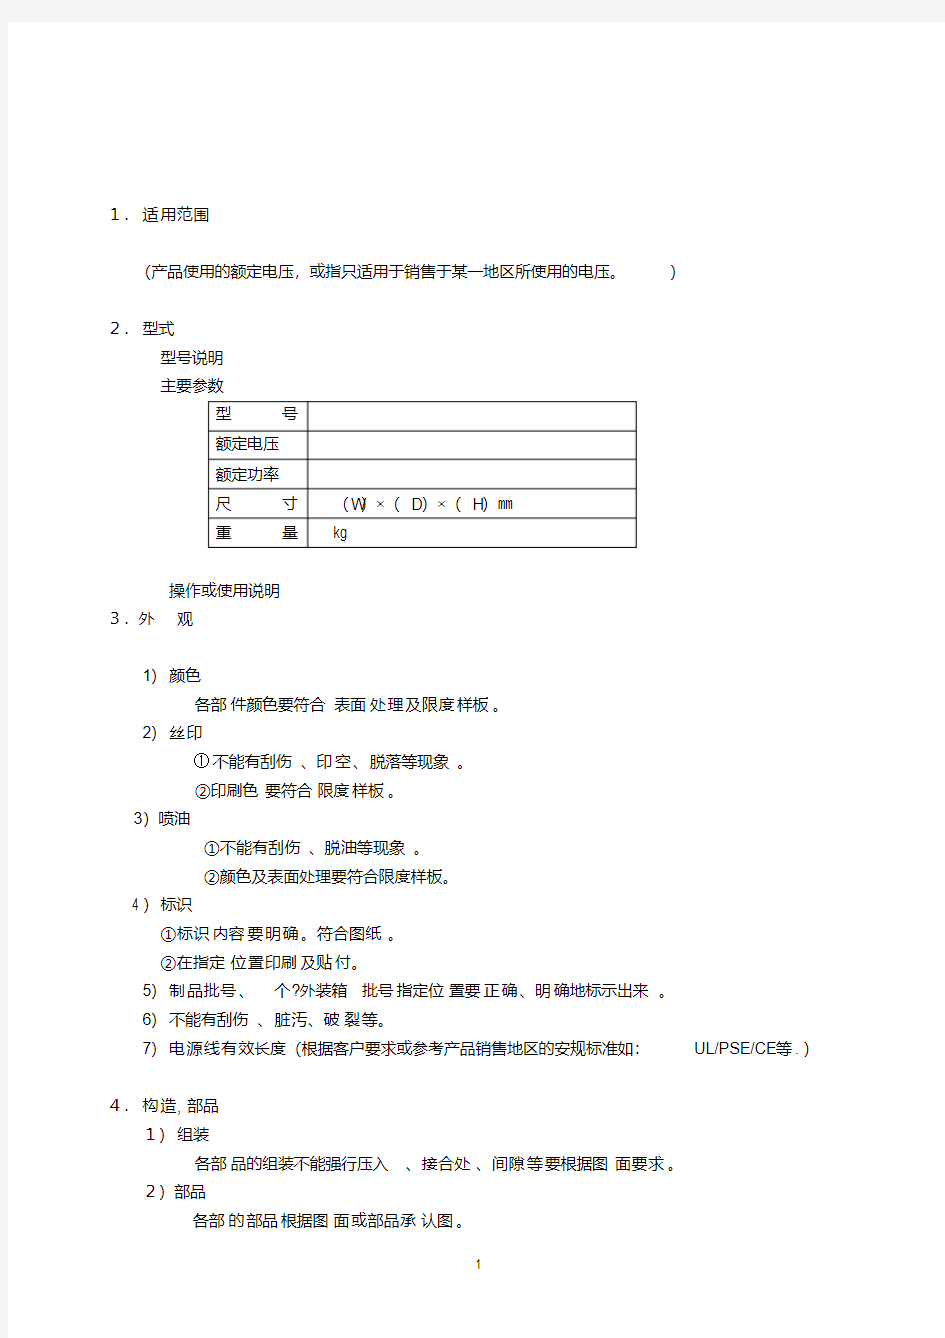 新版电器产品规格书格式.pdf